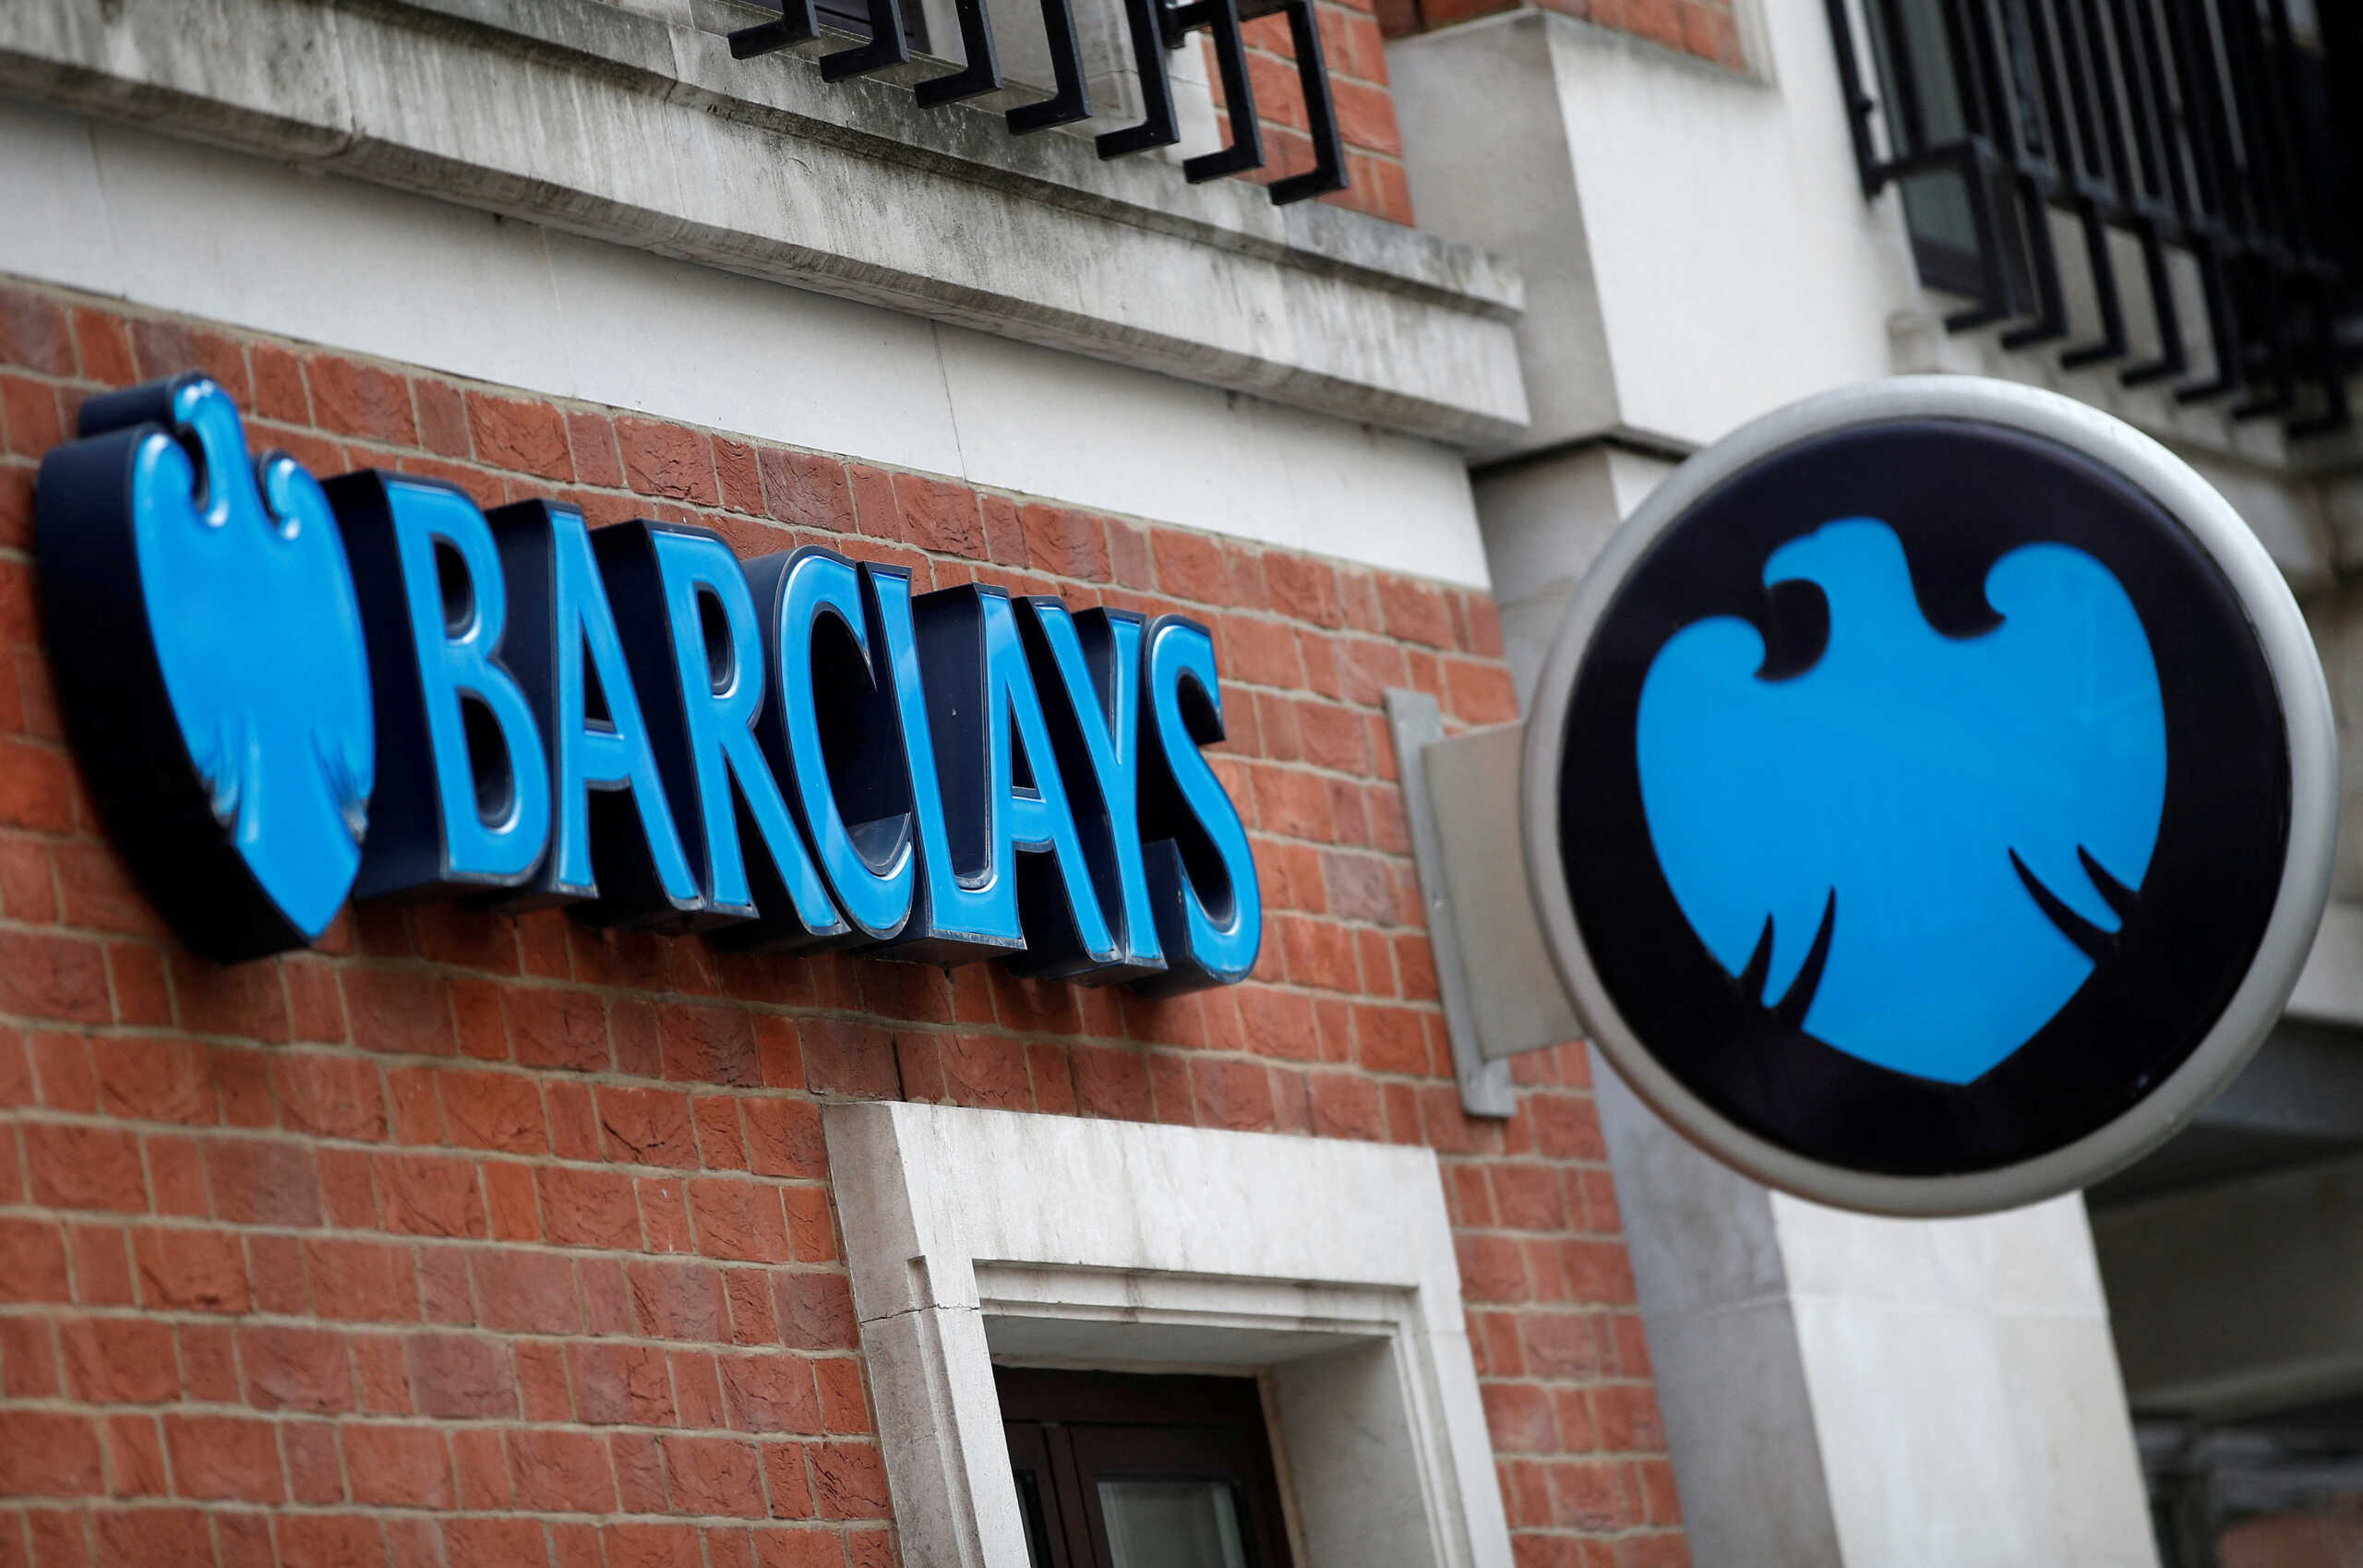 Η Barclays υπόσχεται να επιστρέψει 10 δισ. λίρες στους επενδυτές στο πλαίσιο της αναθεώρησης